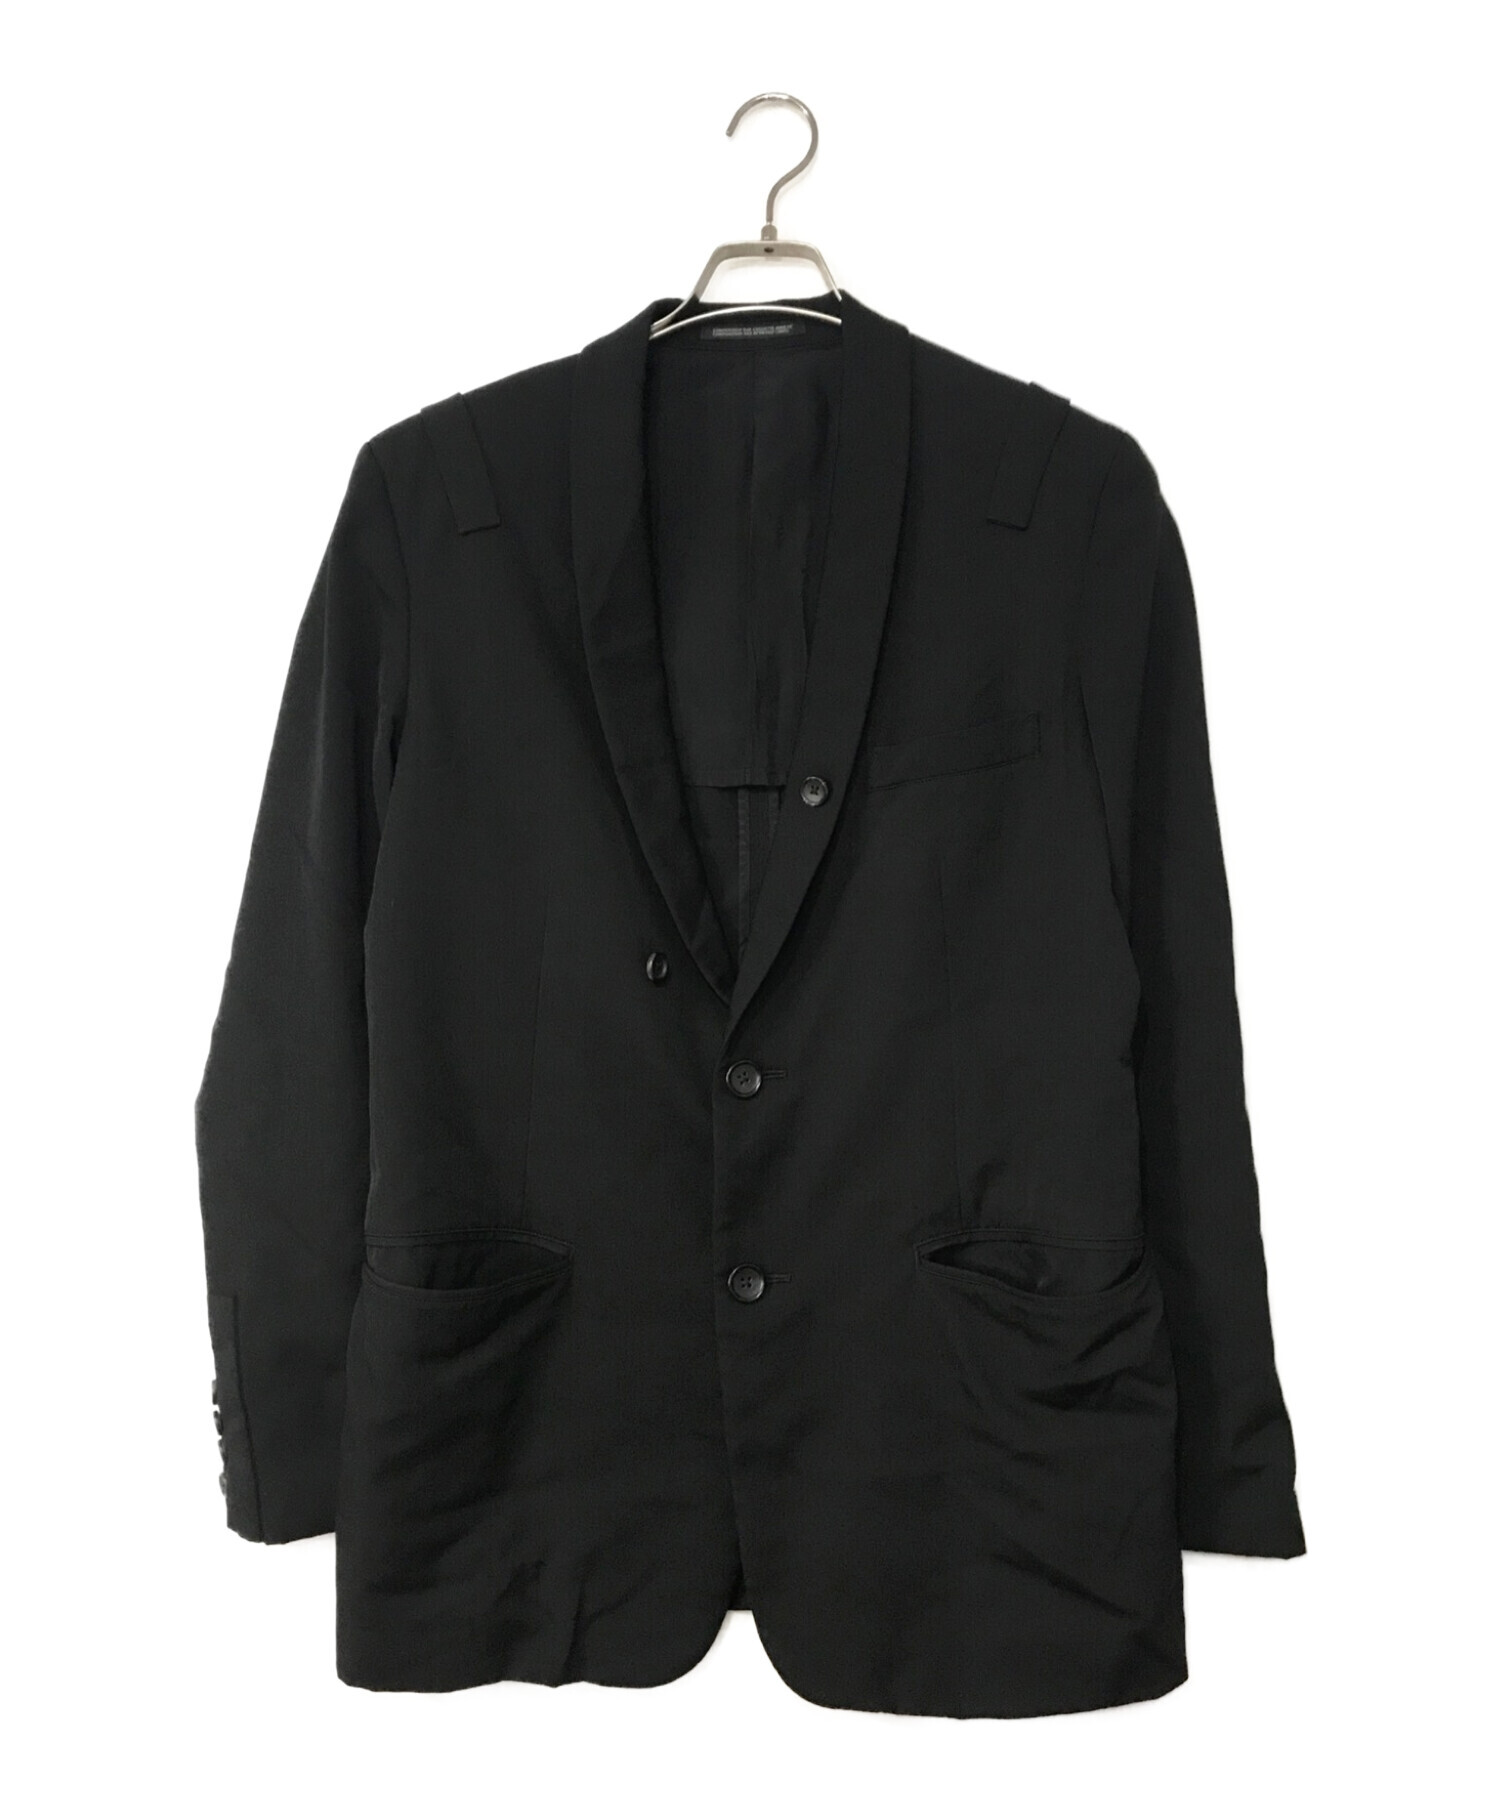 Yohji Yamamoto pour homme (ヨウジヤマモト プールオム) ショールカラー2Bテーラードジャケット ブラック サイズ:2